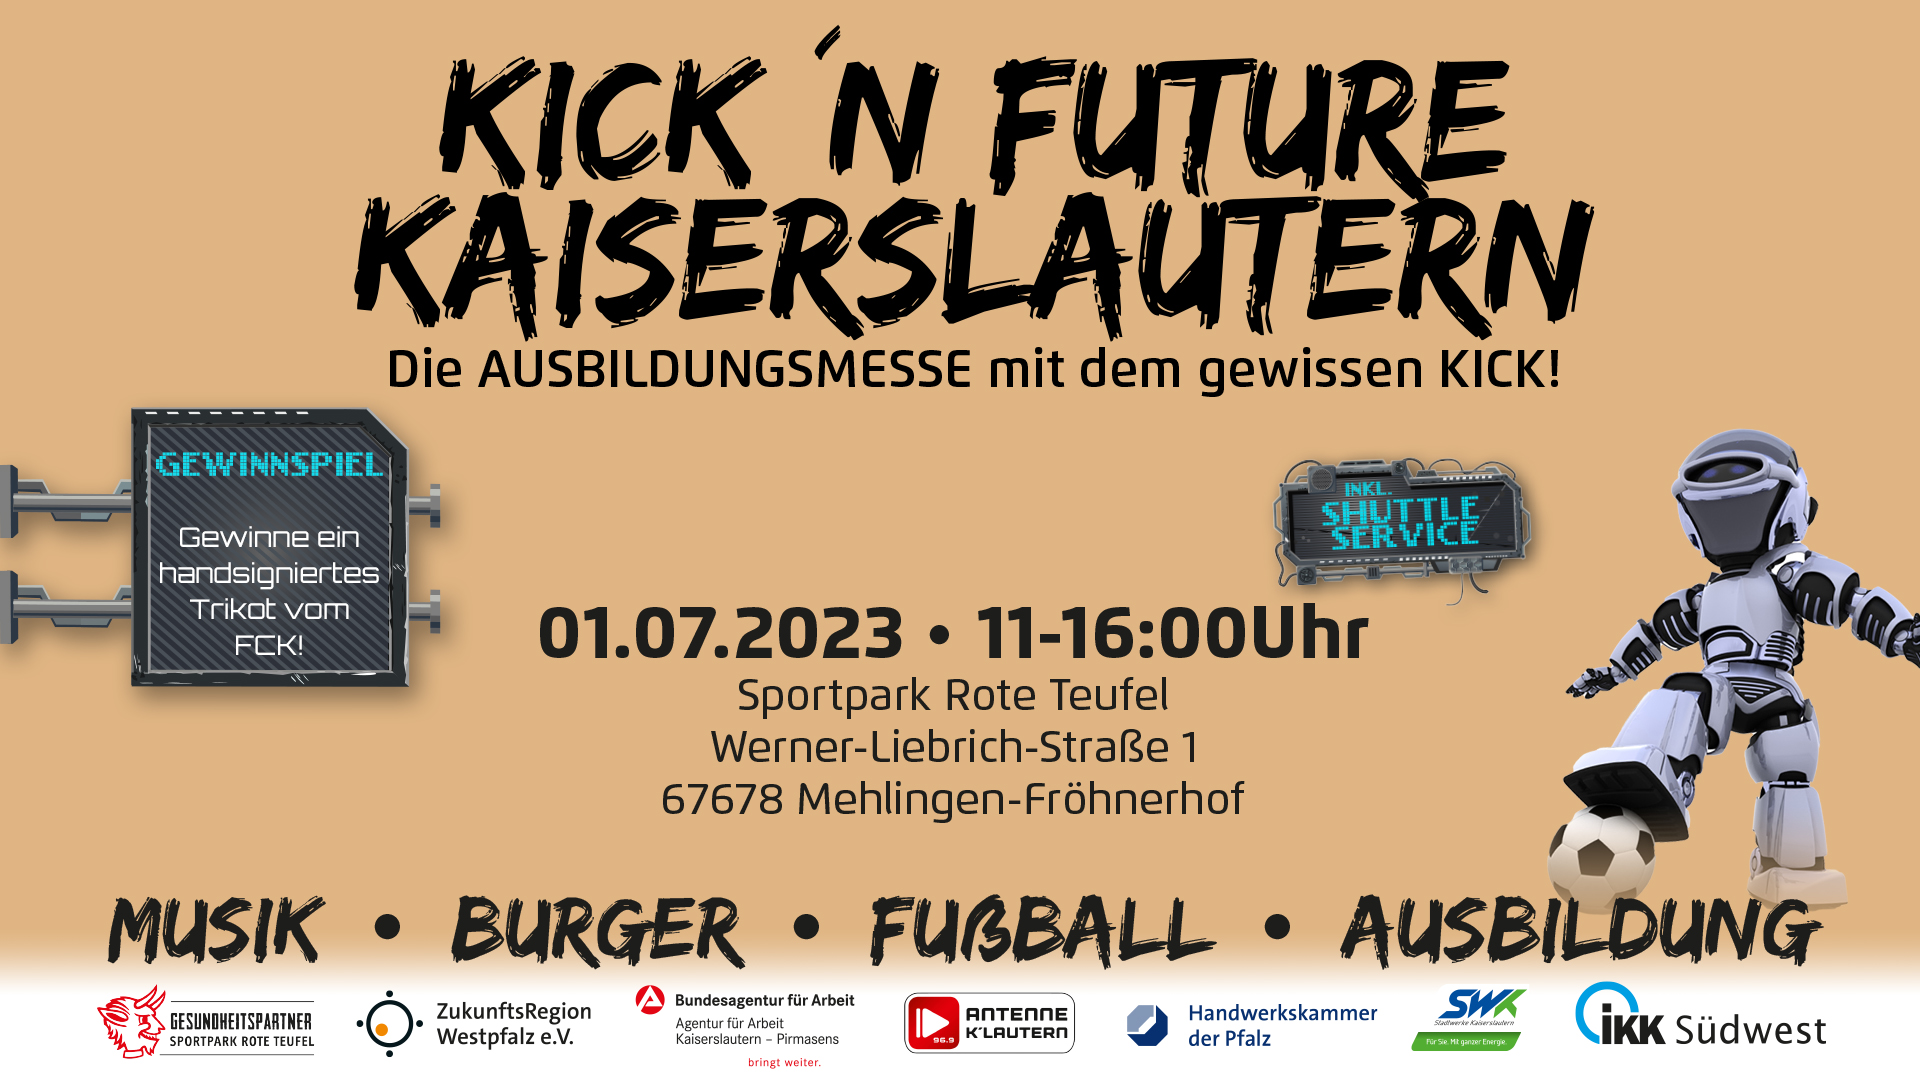 KicknFuture Kaiserslautern